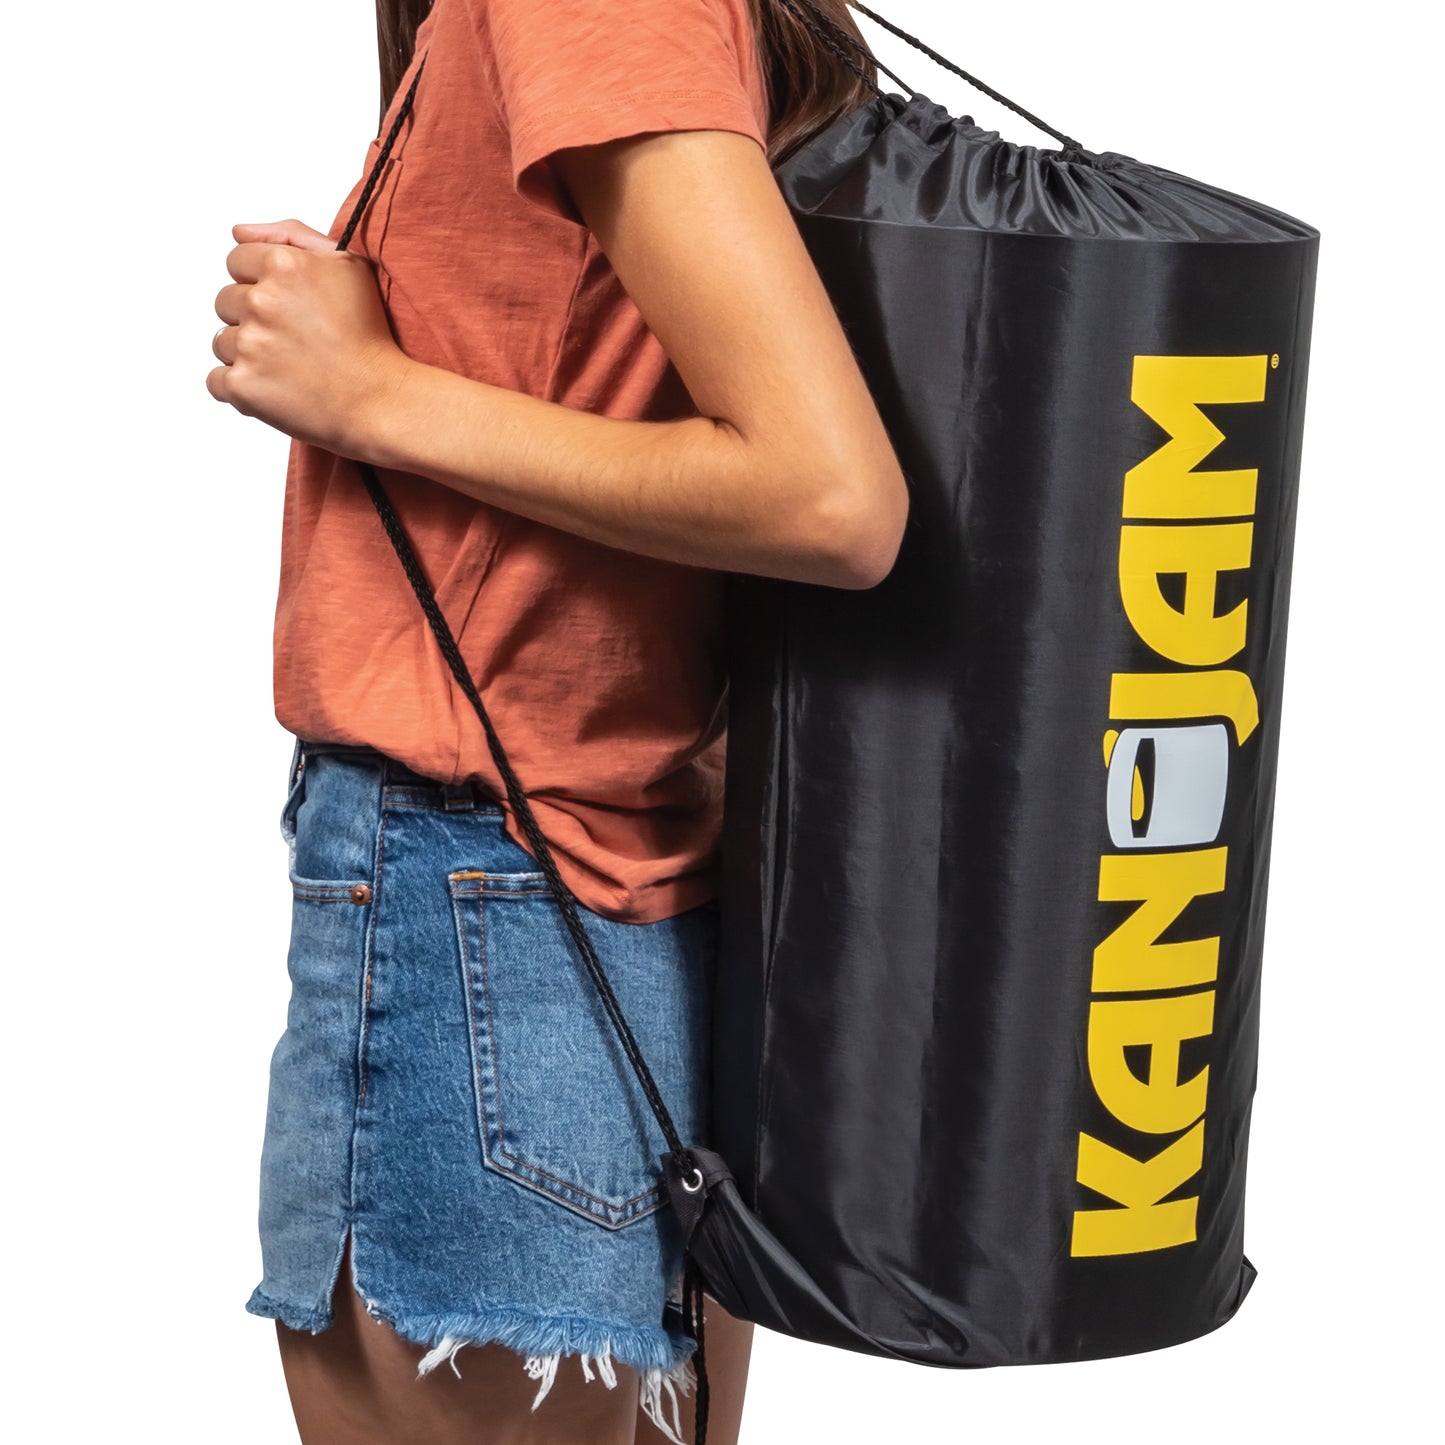 Kan Jam Original with Carry Bag